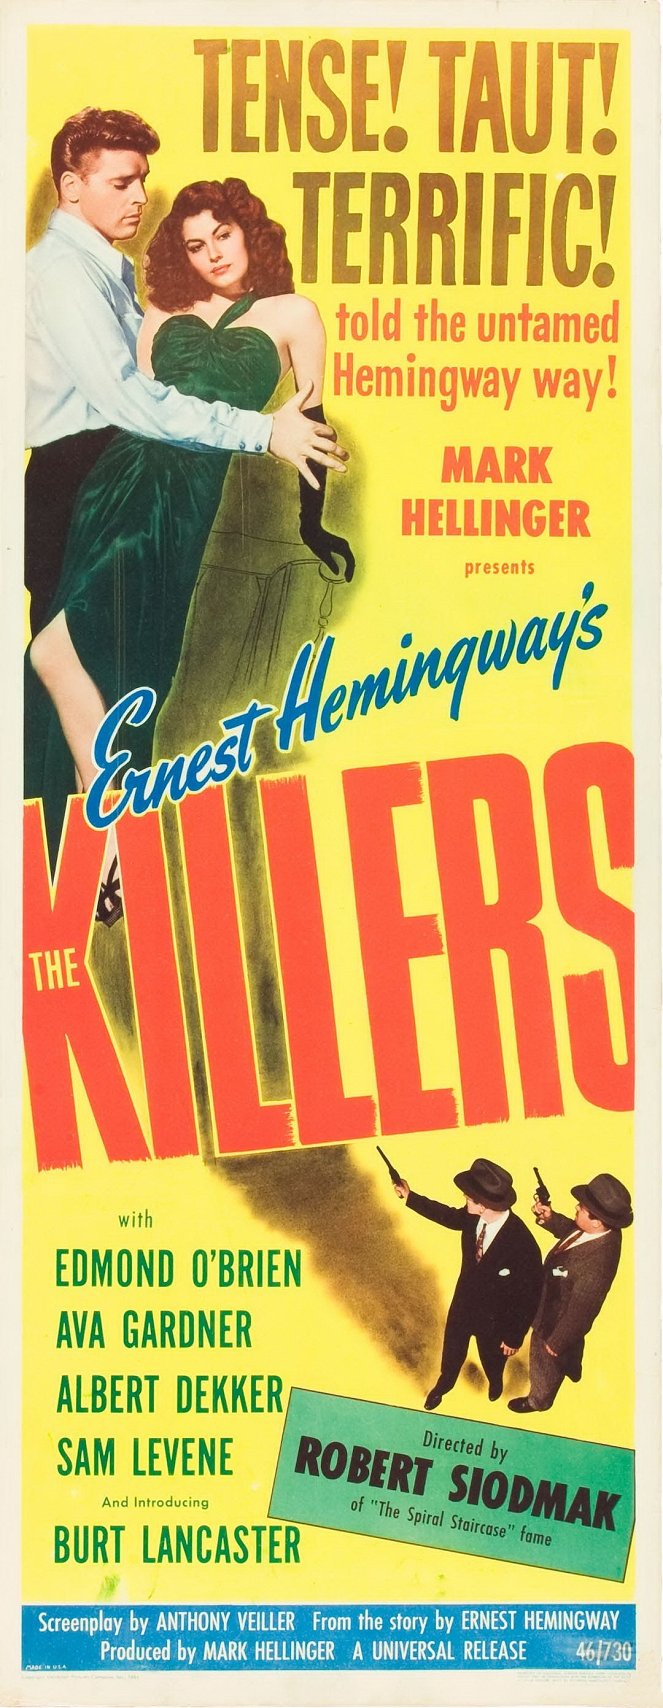 The Killers - Plakaty